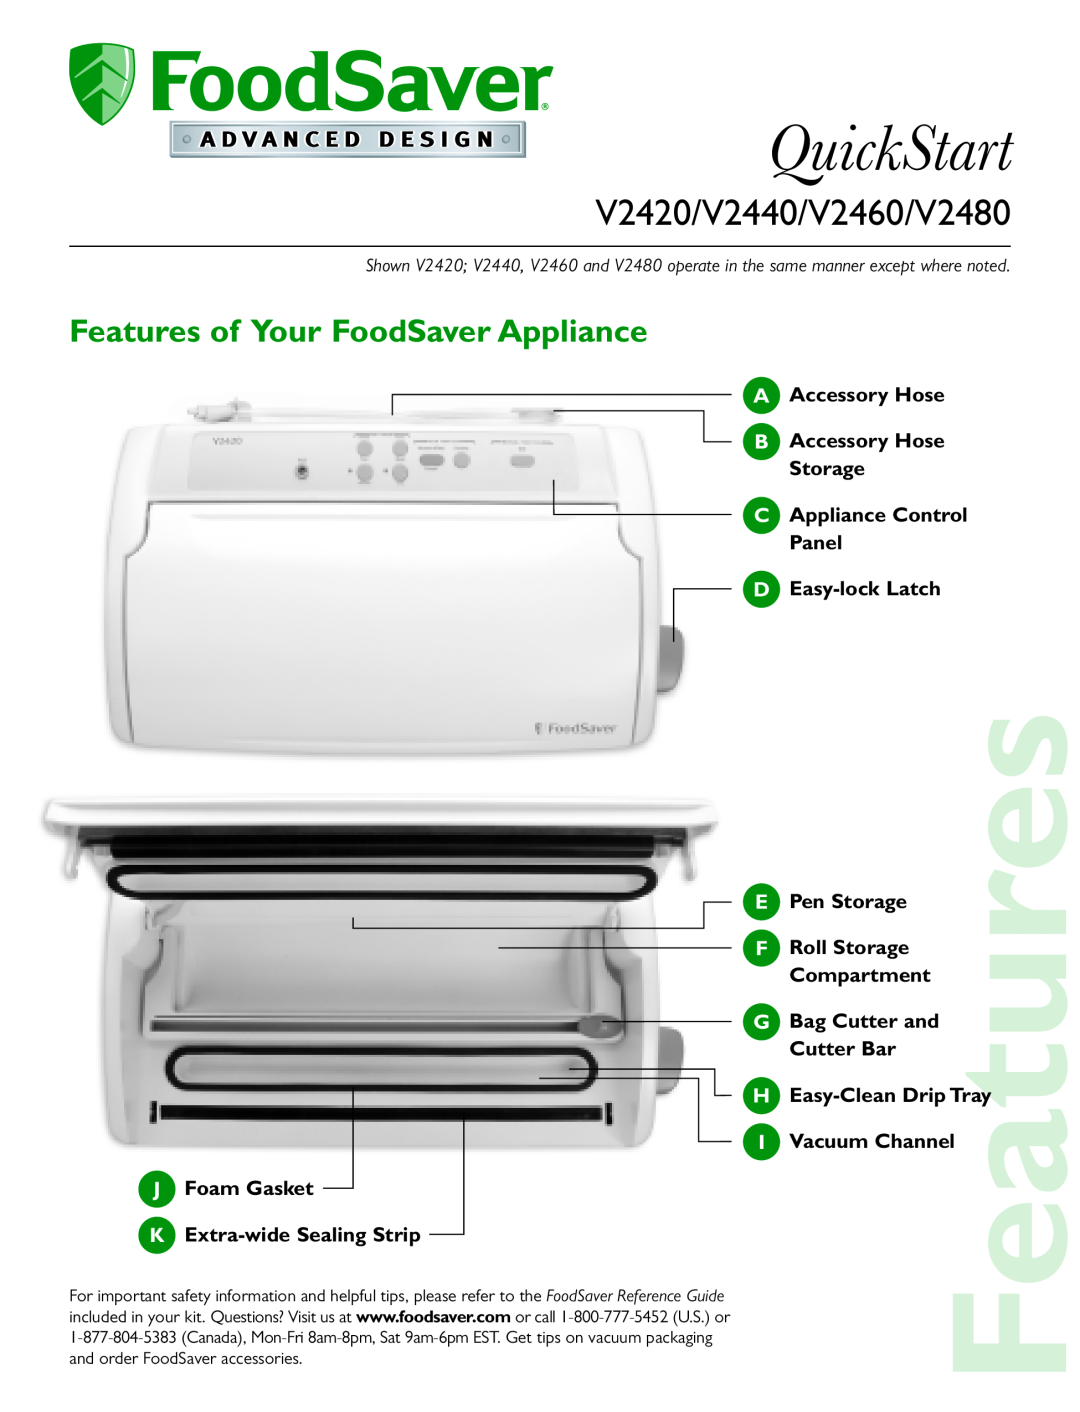 FoodSaver quick start Features of Your FoodSaver Appliance, QuickStart, V2420/V2440/V2460/V2480 